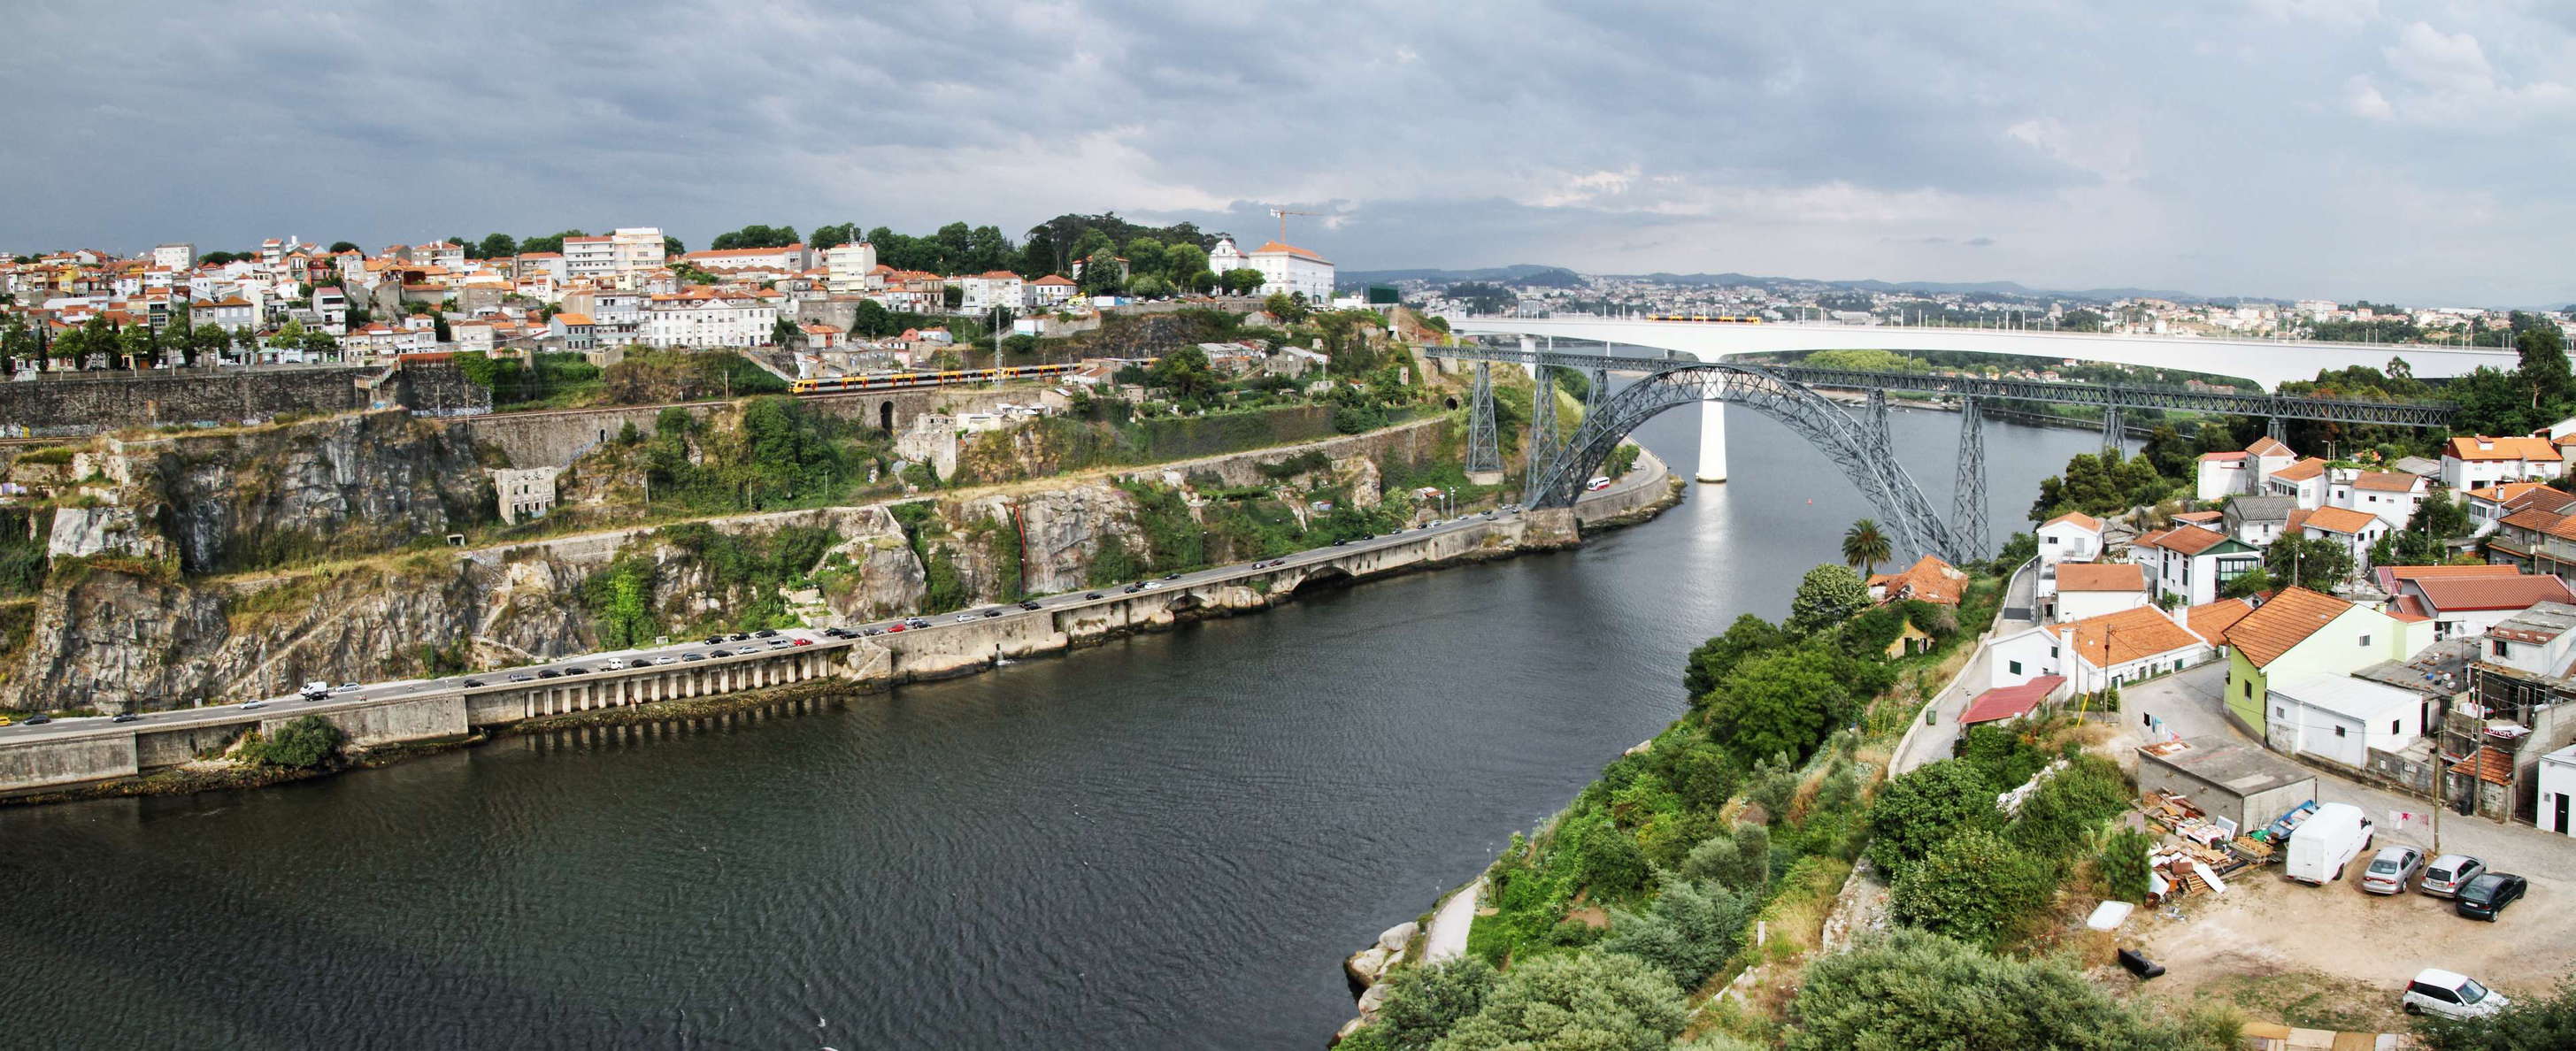 Porto  |  Rio Douro with railway bridges